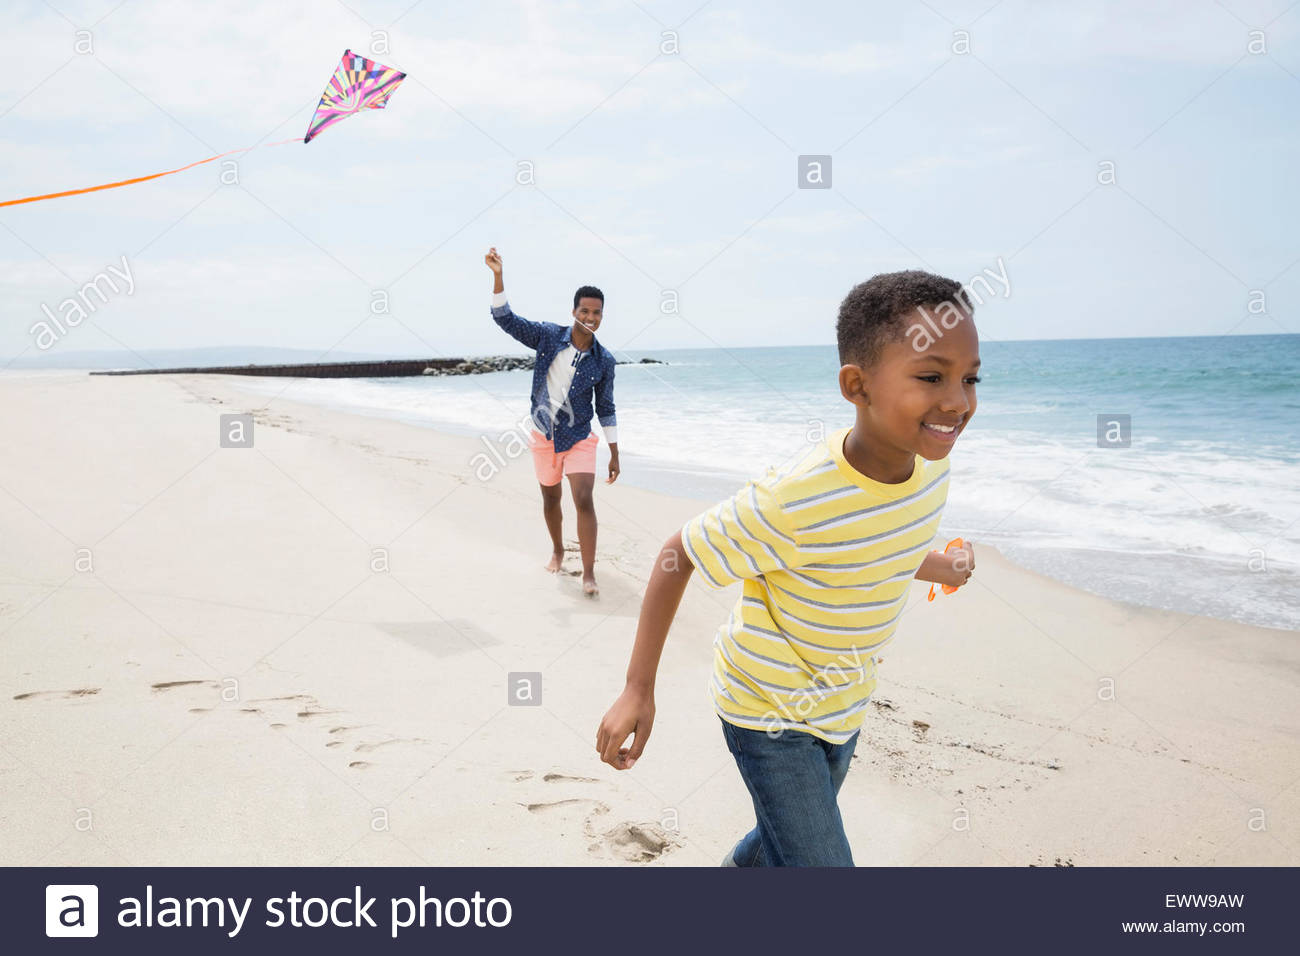 Père et fils flying kite on beach Banque D'Images